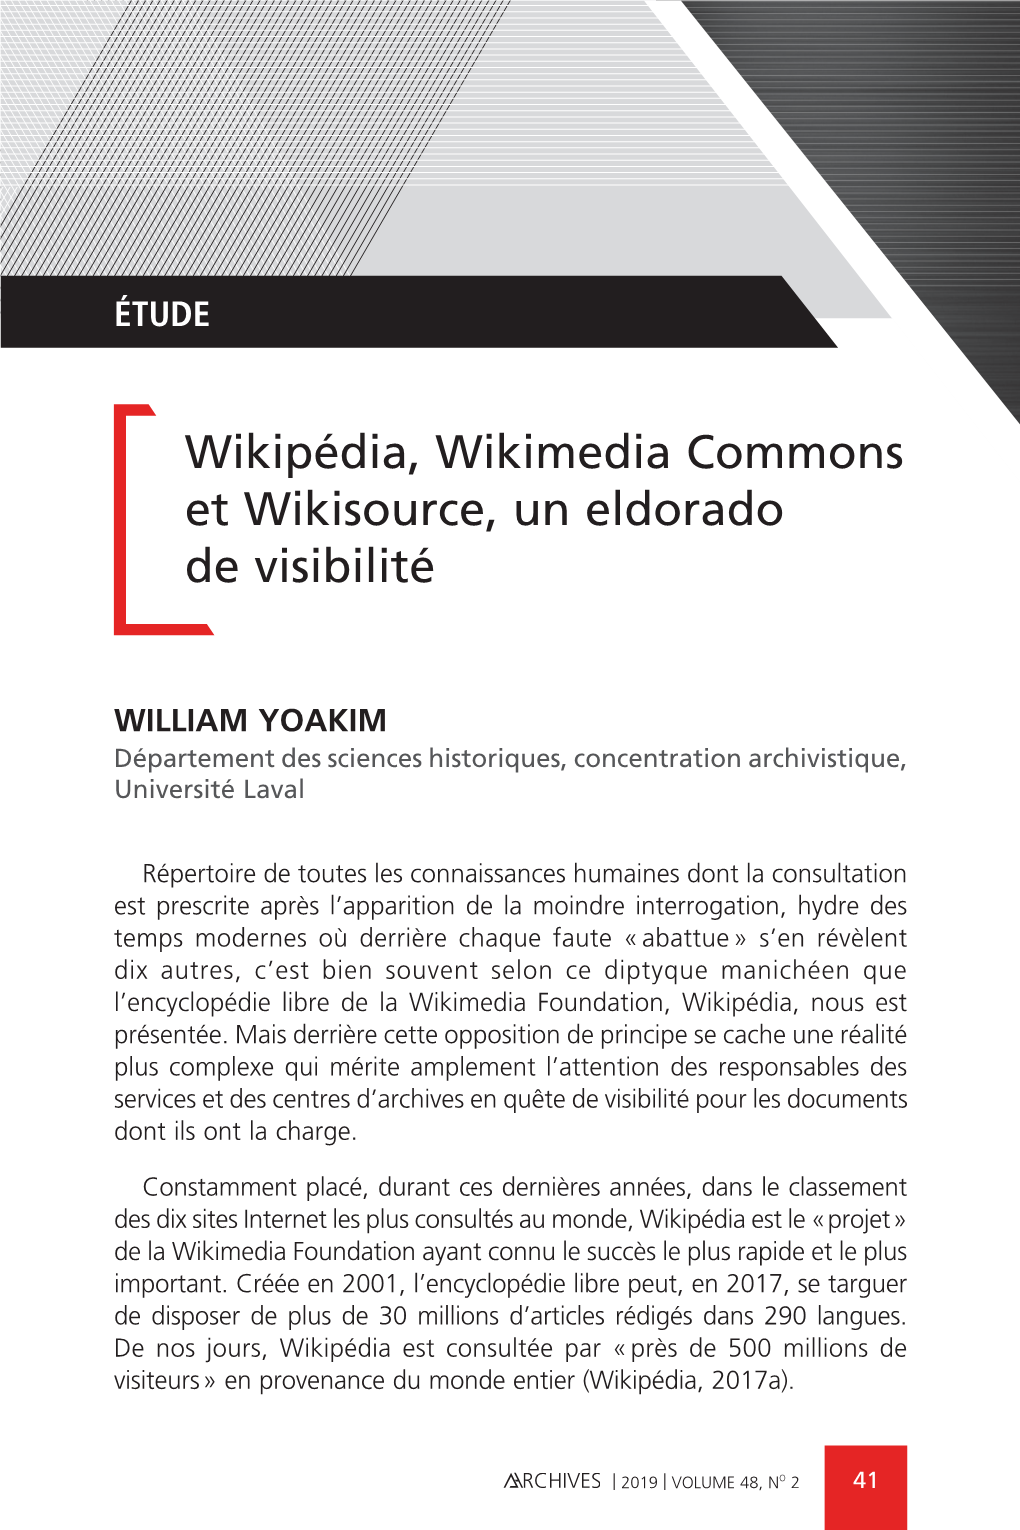 Wikipédia, Wikimedia Commons Et Wikisource, Un Eldorado De Visibilité